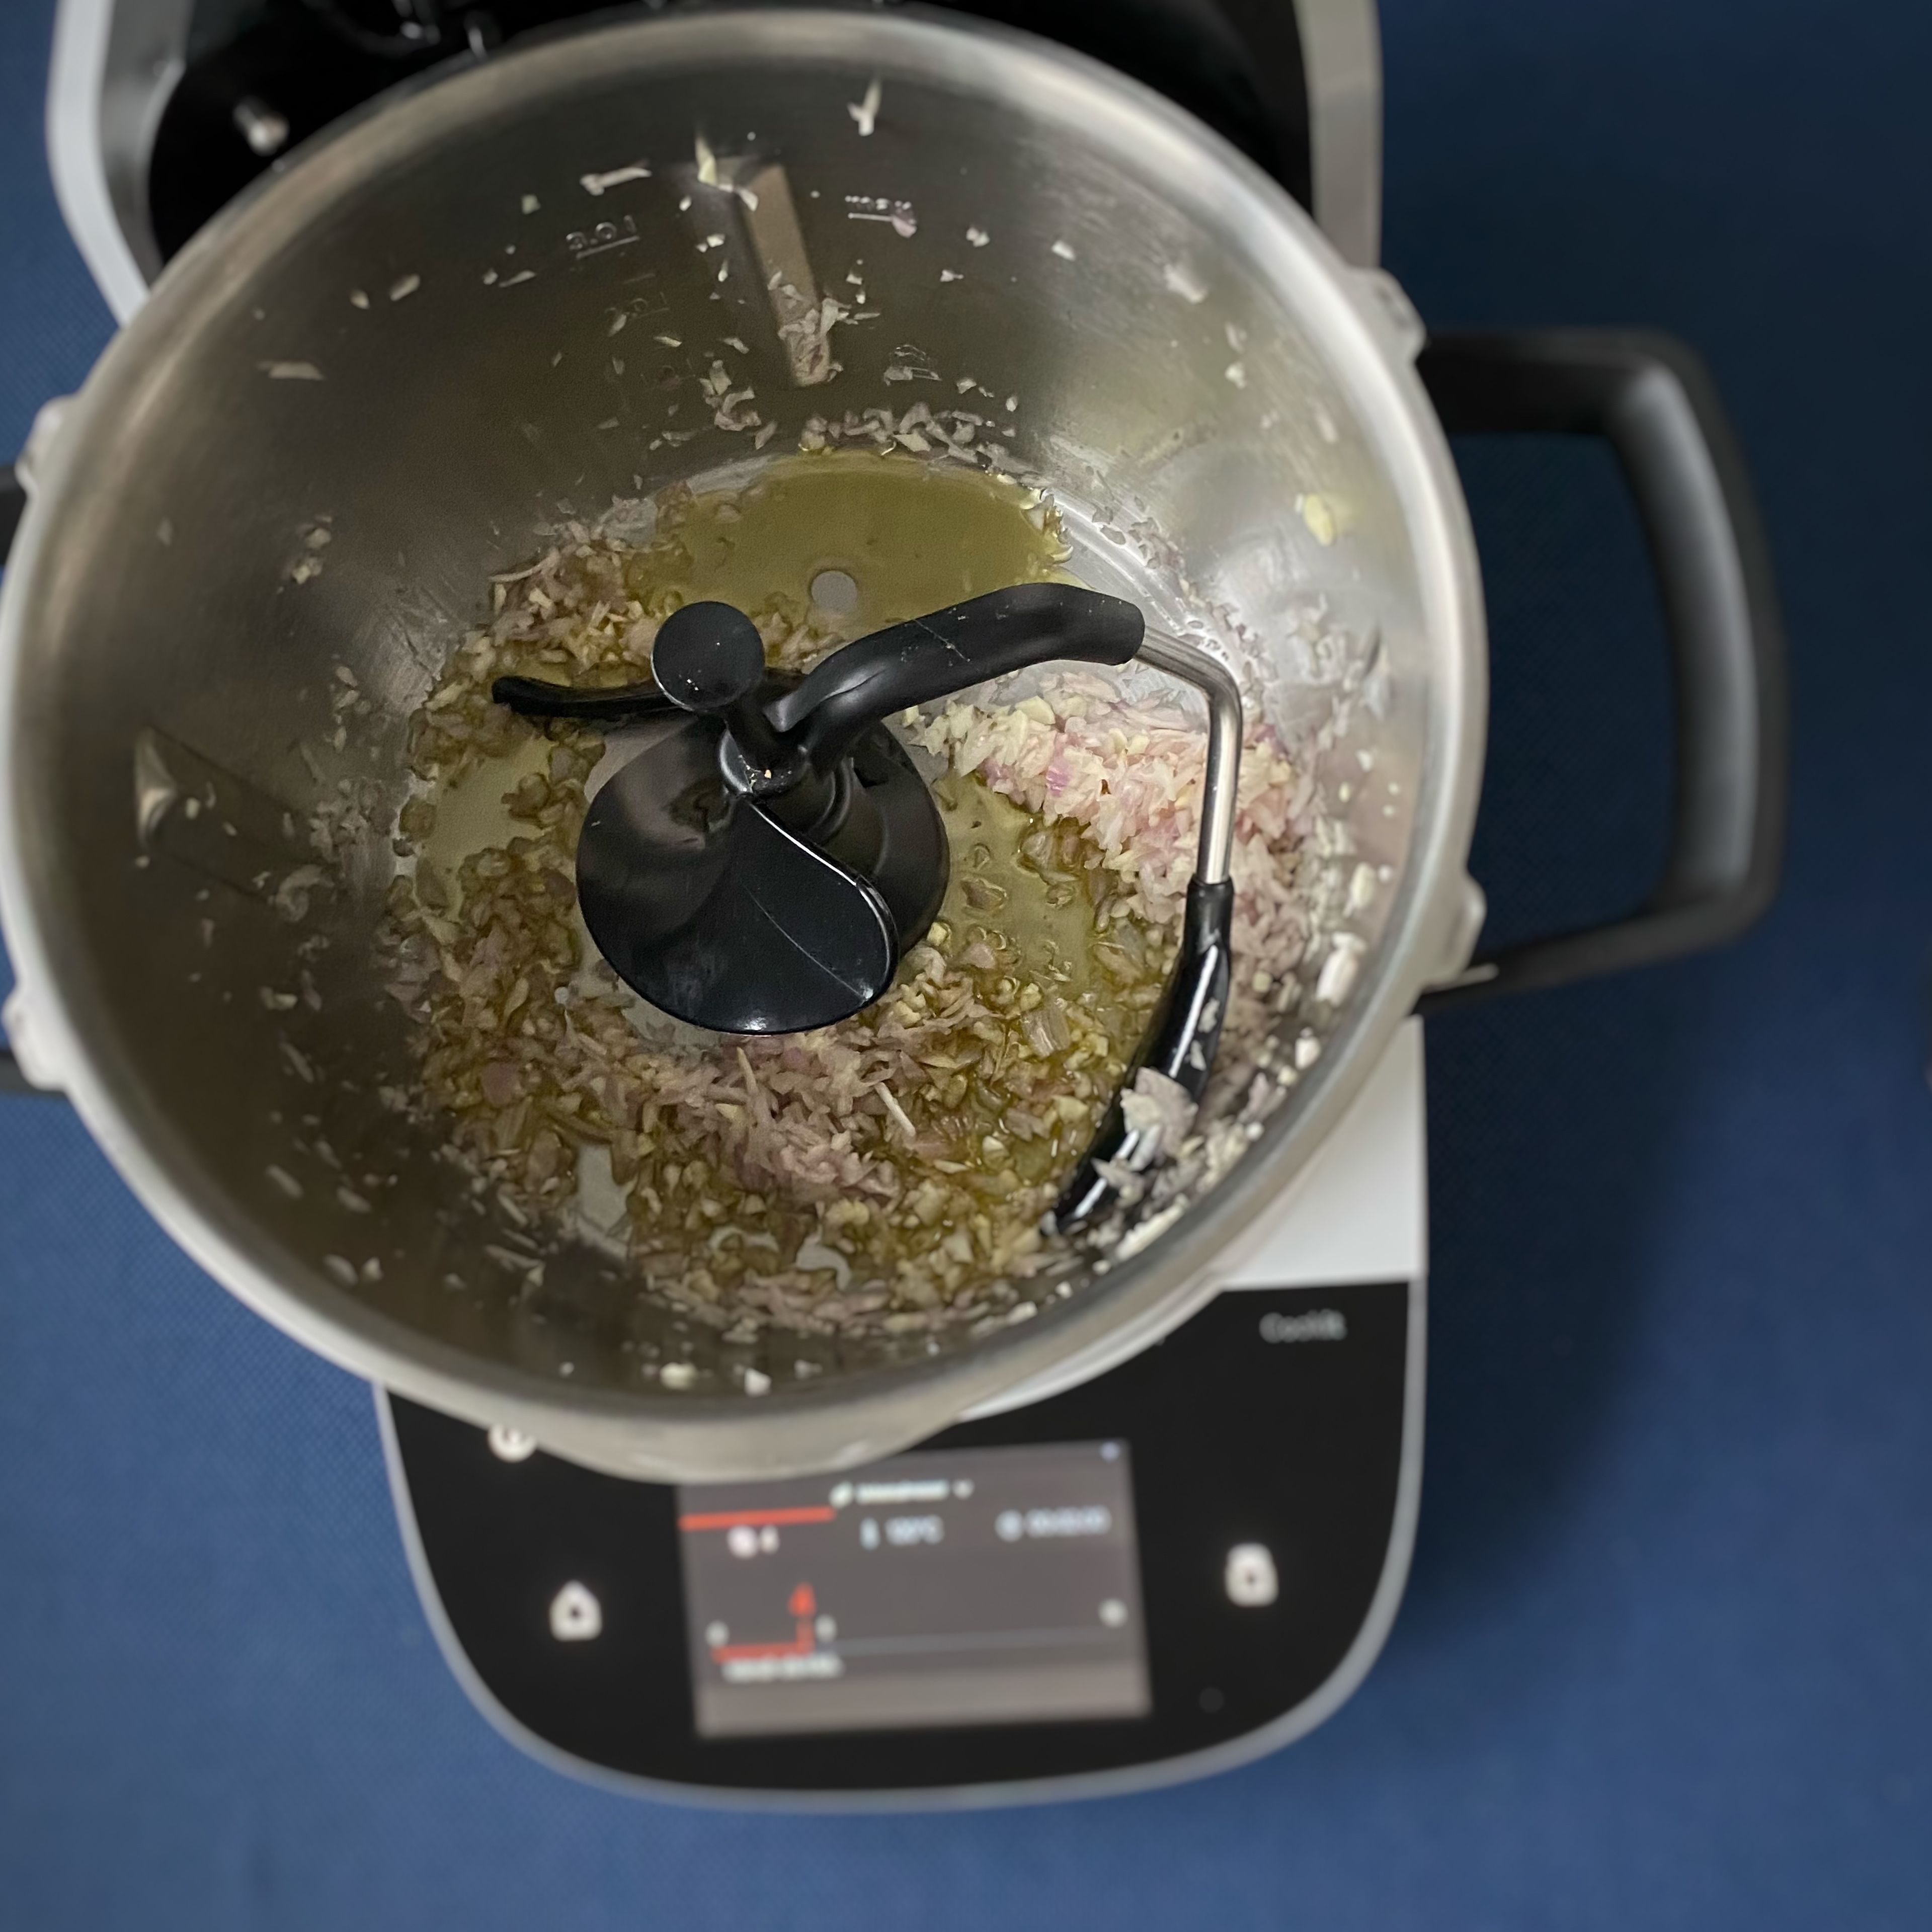 Das Cookit Universalmesser einsetzen. Die Schalotten und den Knoblauch schälen und in den Cookit geben. Den Deckel schließen, Messbecher einsetzen und zerkleinern (Universalmesser | Stufe 14 | 10 Sekunden). Die Zutaten mit dem Cookit Küchenspatel nach unten schieben. Das Universalmesser entfernen und den 3D-Rührer einsetzen. Öl hinzufügen.